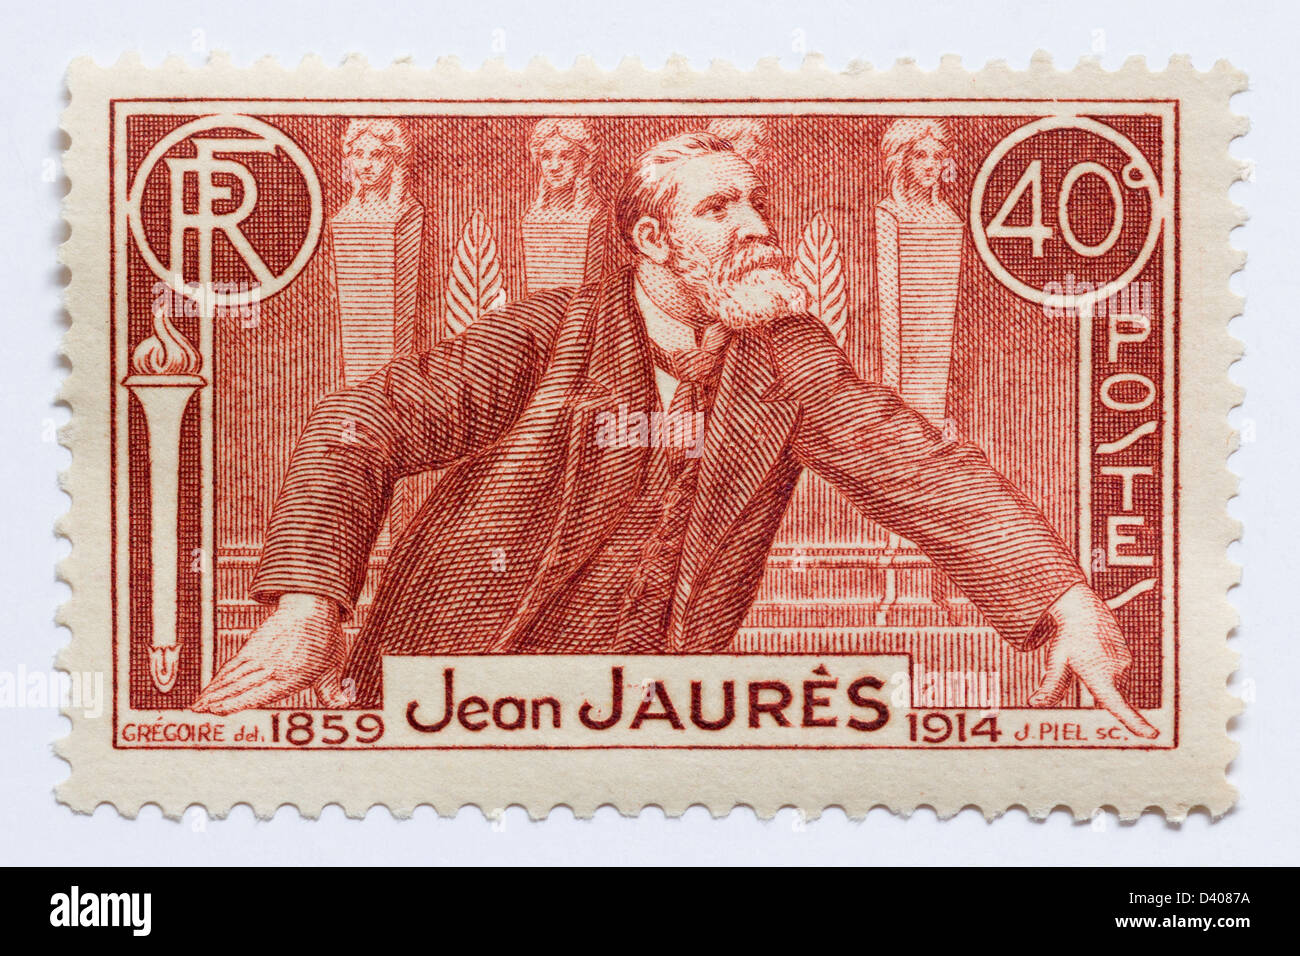 1936 mostrando el sello francés Jean Jaures (1859-1914), famoso líder socialista francés. Foto de stock